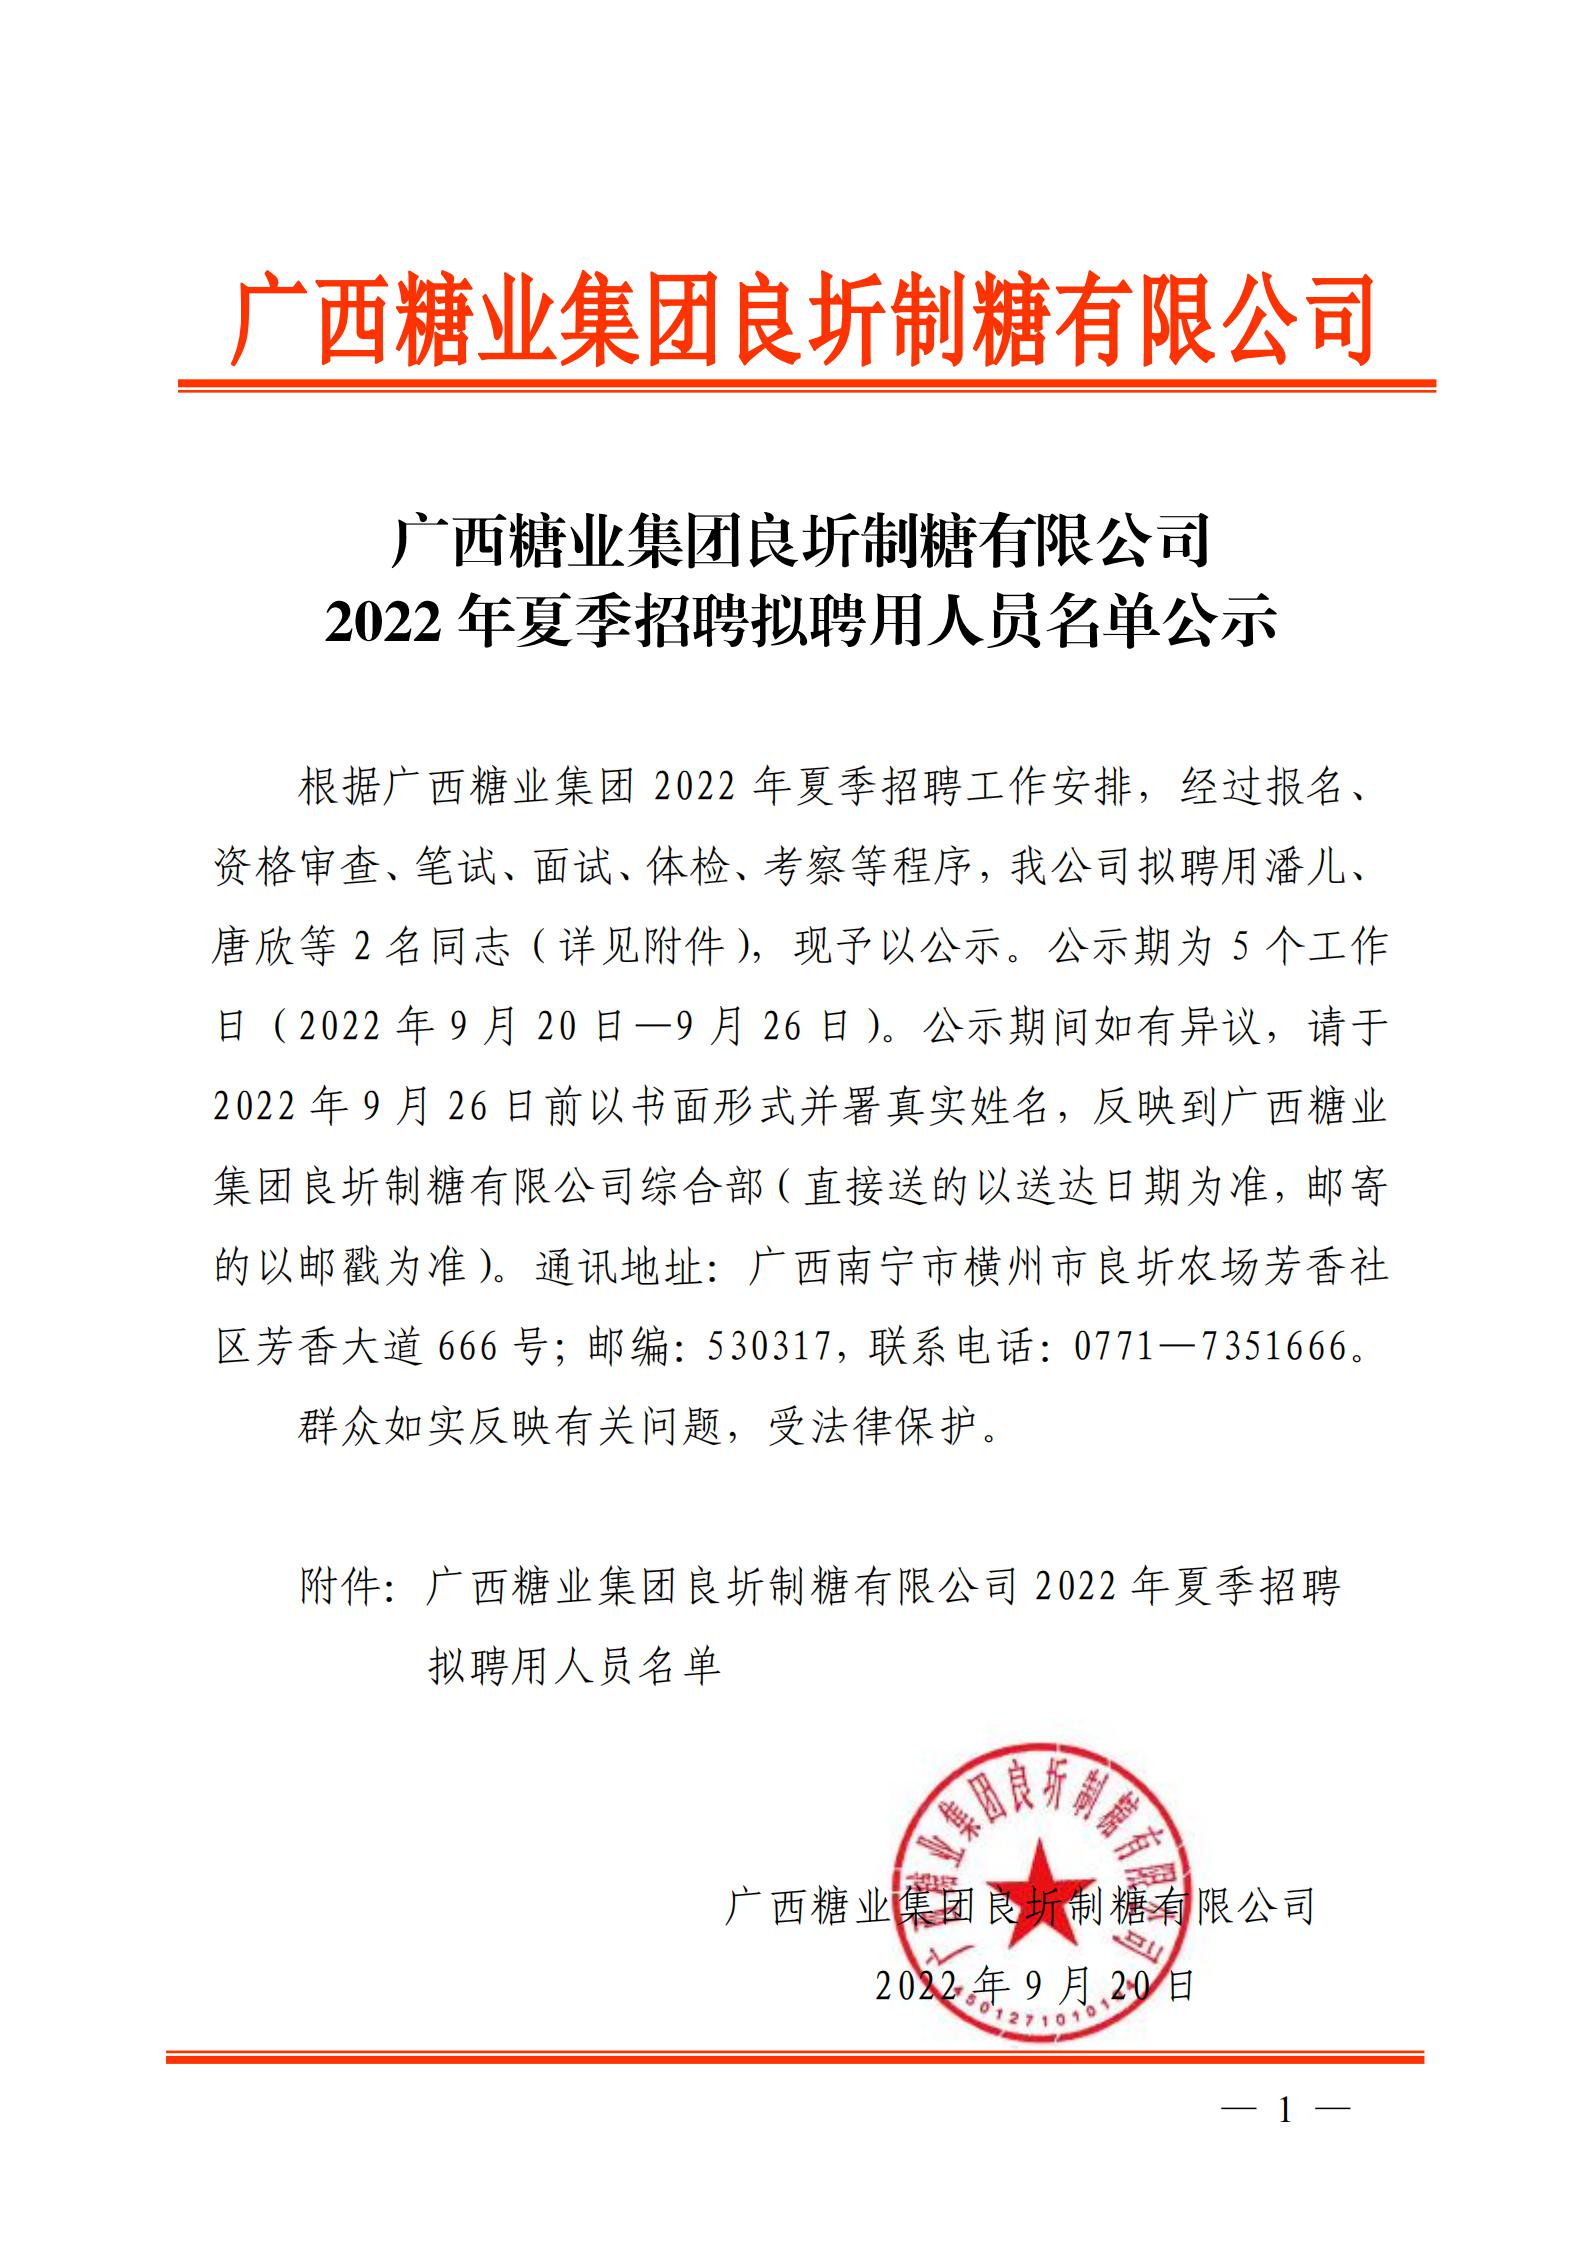 2  广西糖业集团良圻制糖有限公司2022年夏季招聘拟聘用人员名单公示_00.jpg